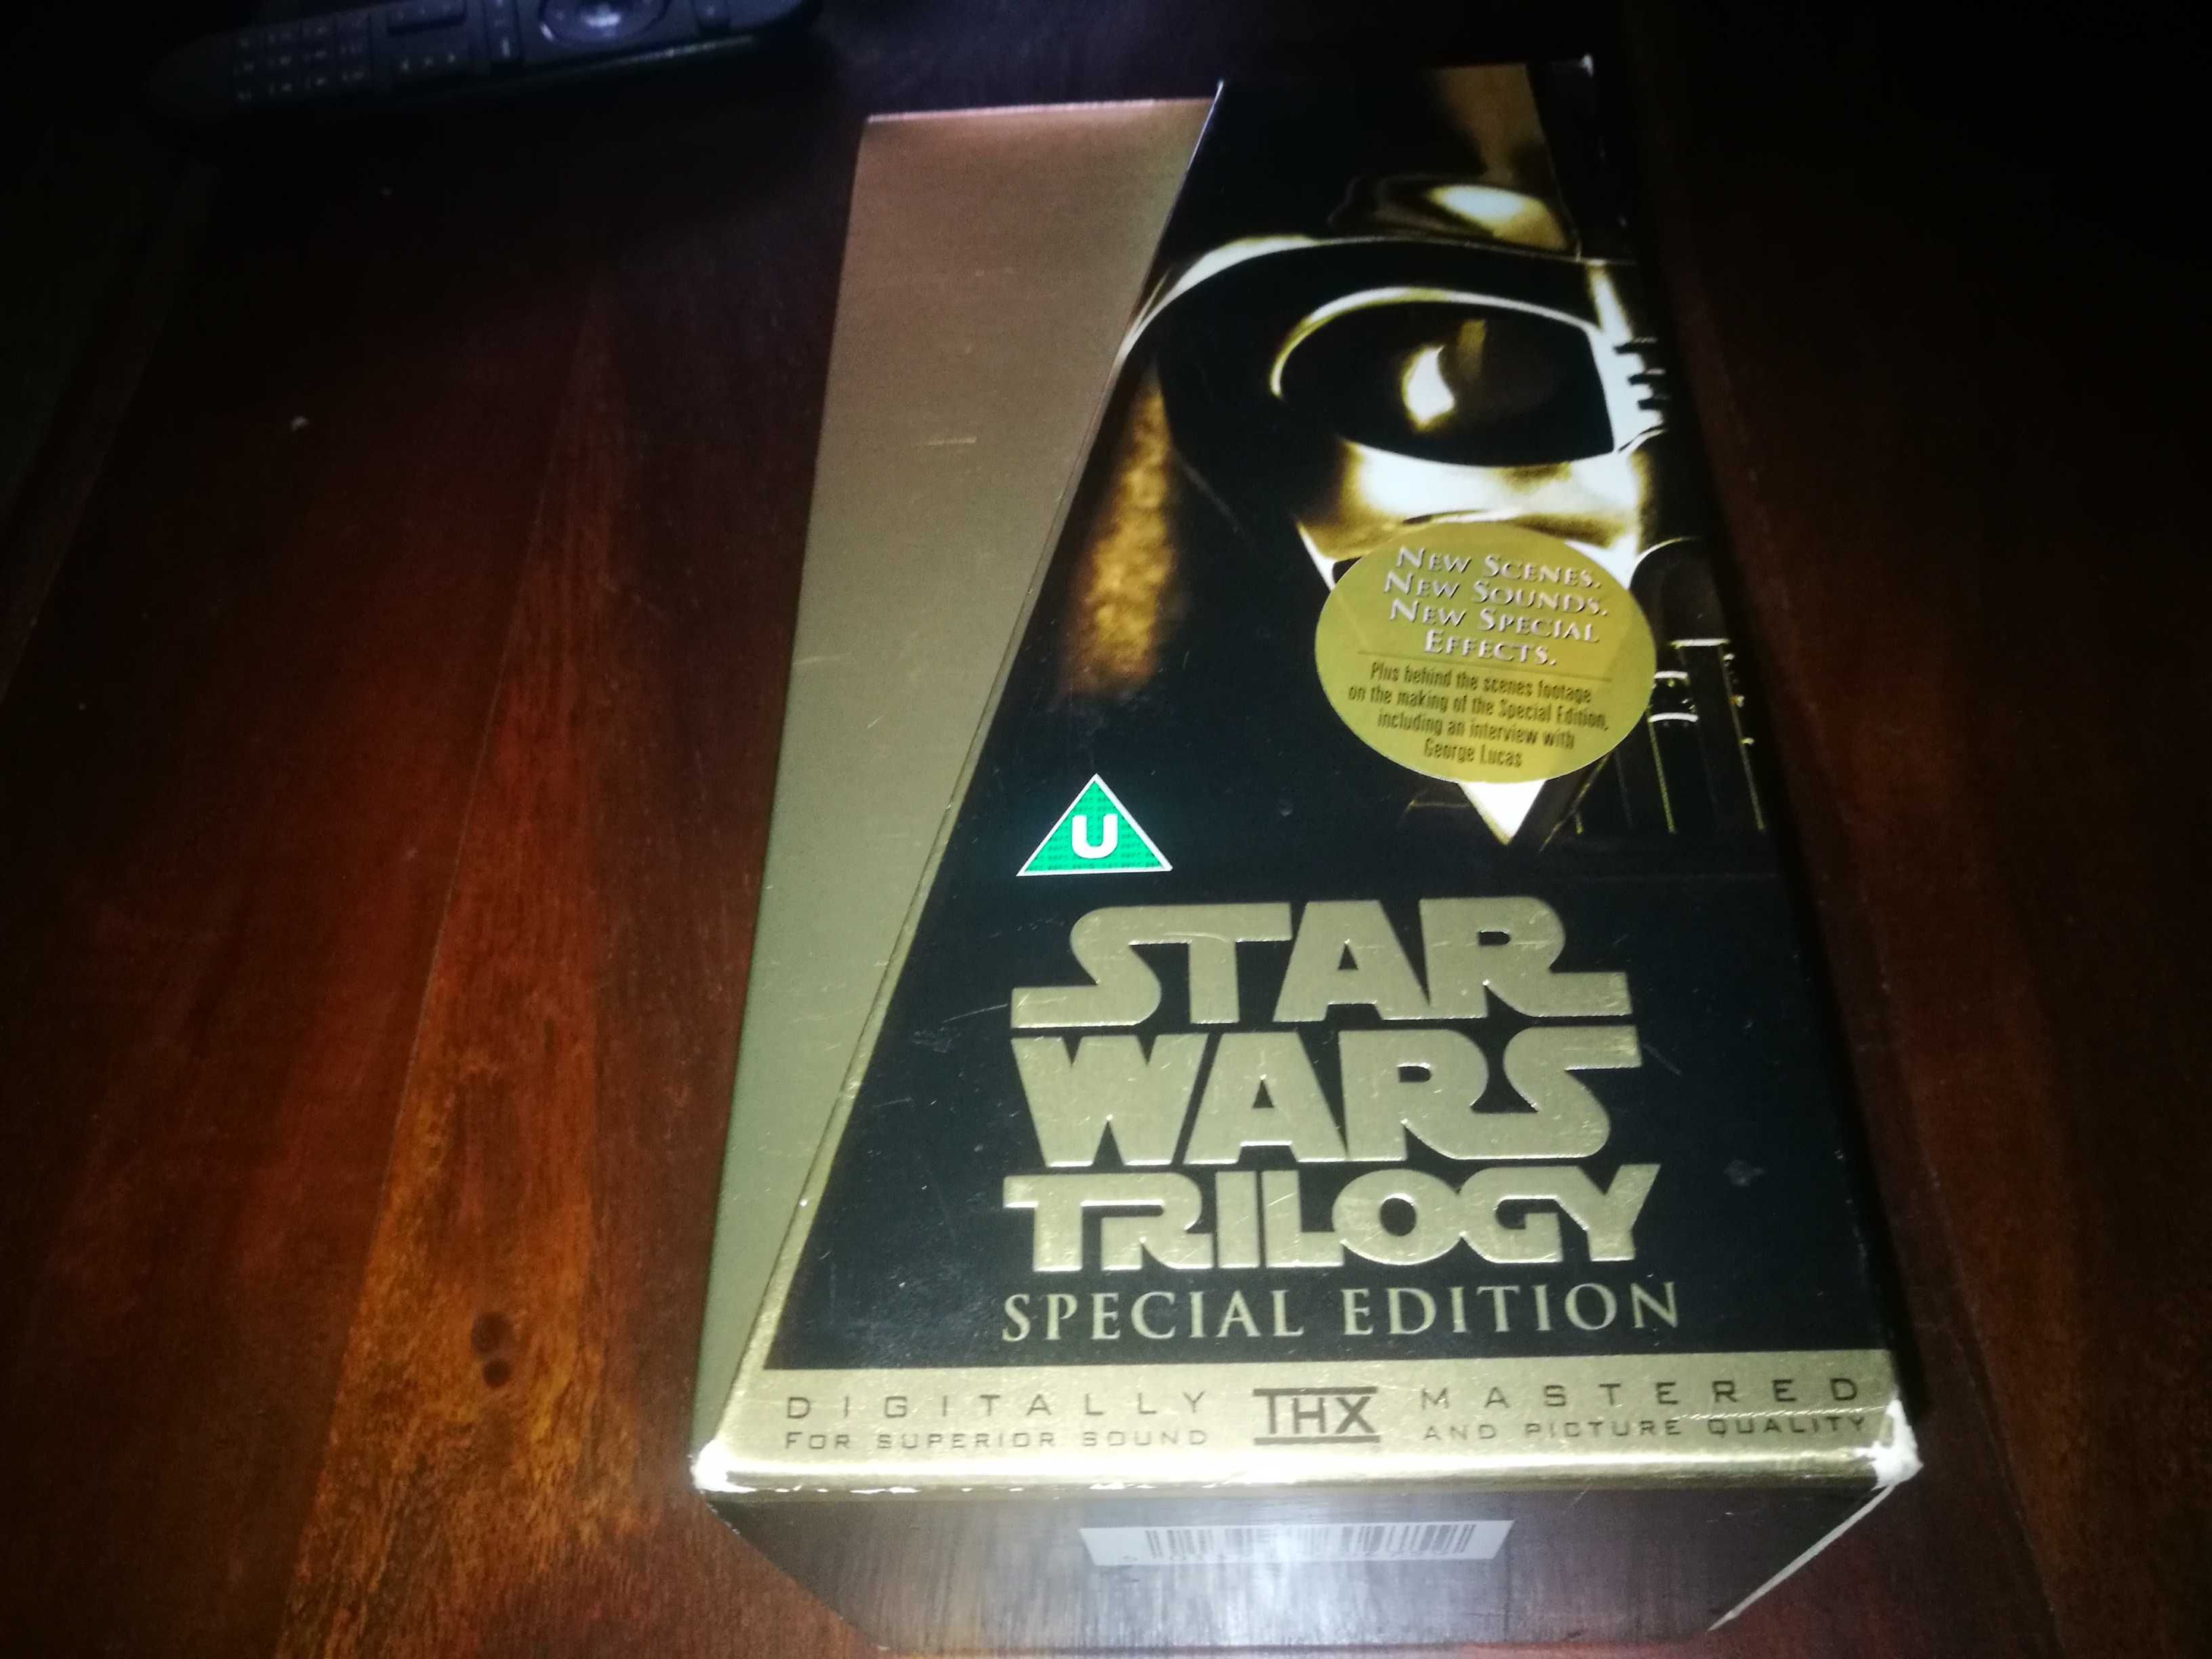 Star Wars - Trilogy (SPECIAL EDITION) caixa com os 3 Filmes VHS